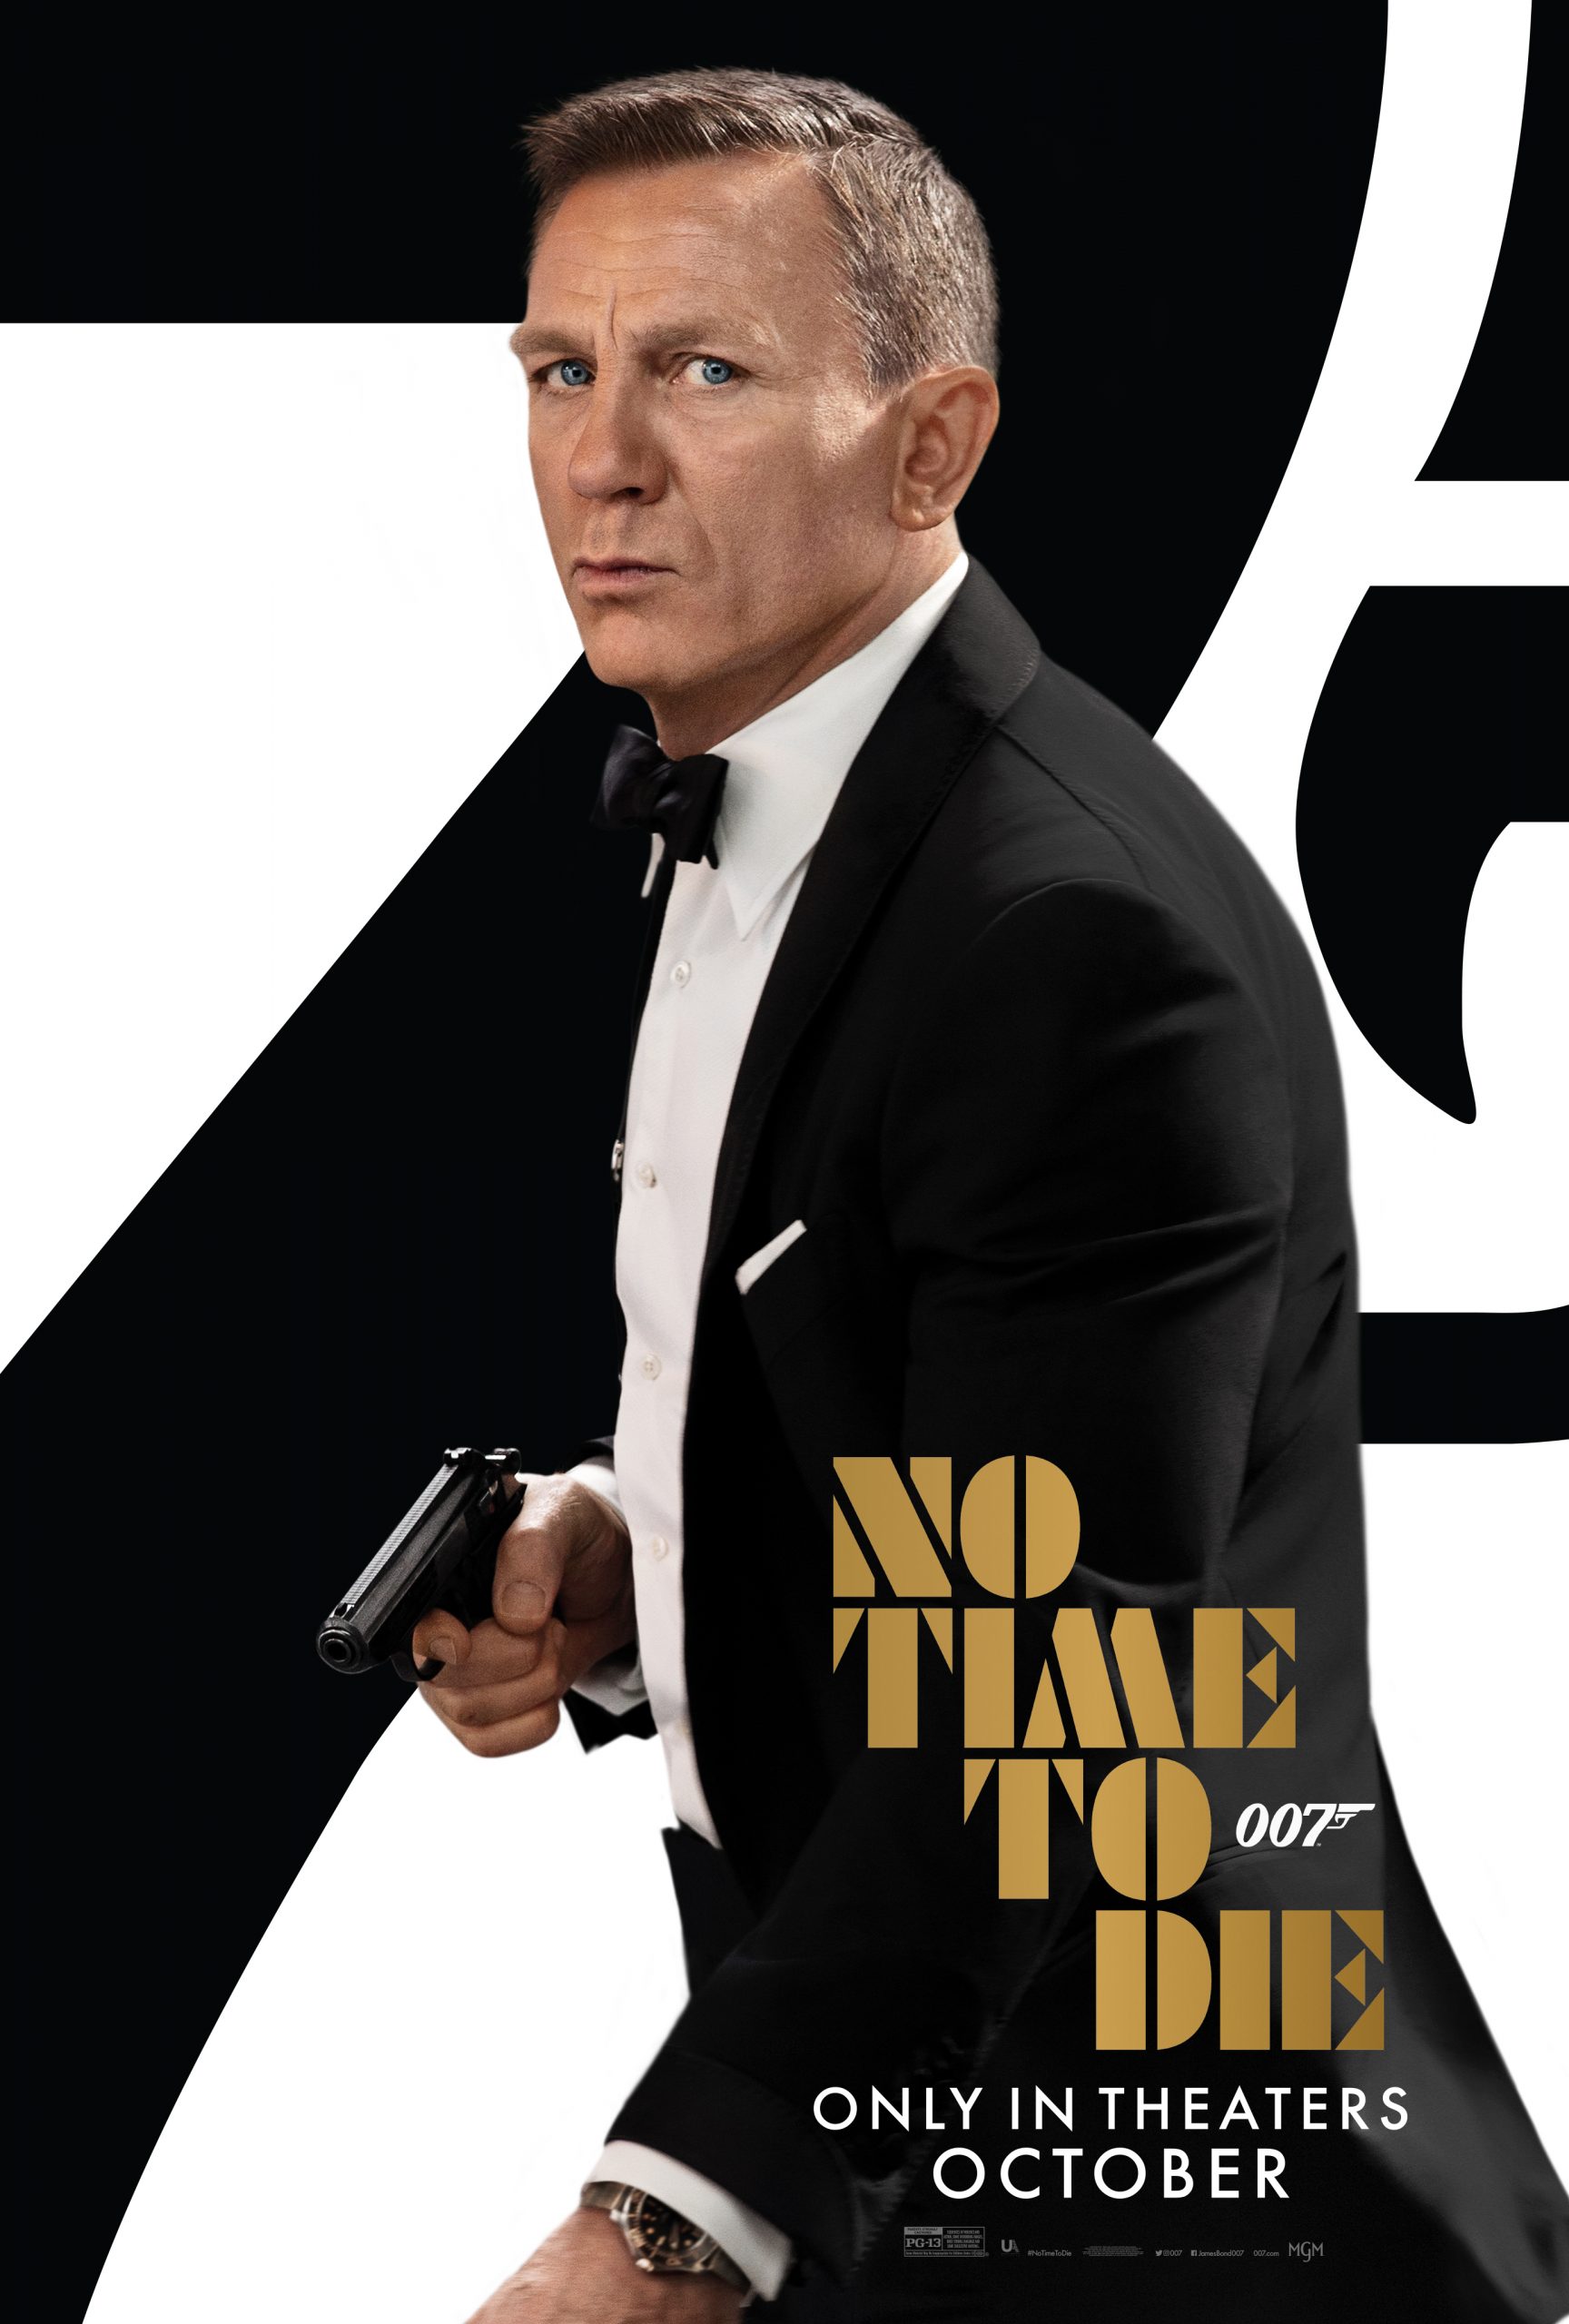 ดูหนังออนไลน์ 007 No Time to Die พยัคฆ์ร้ายฝ่าเวลามรณะ (2021) บรรยายไทย